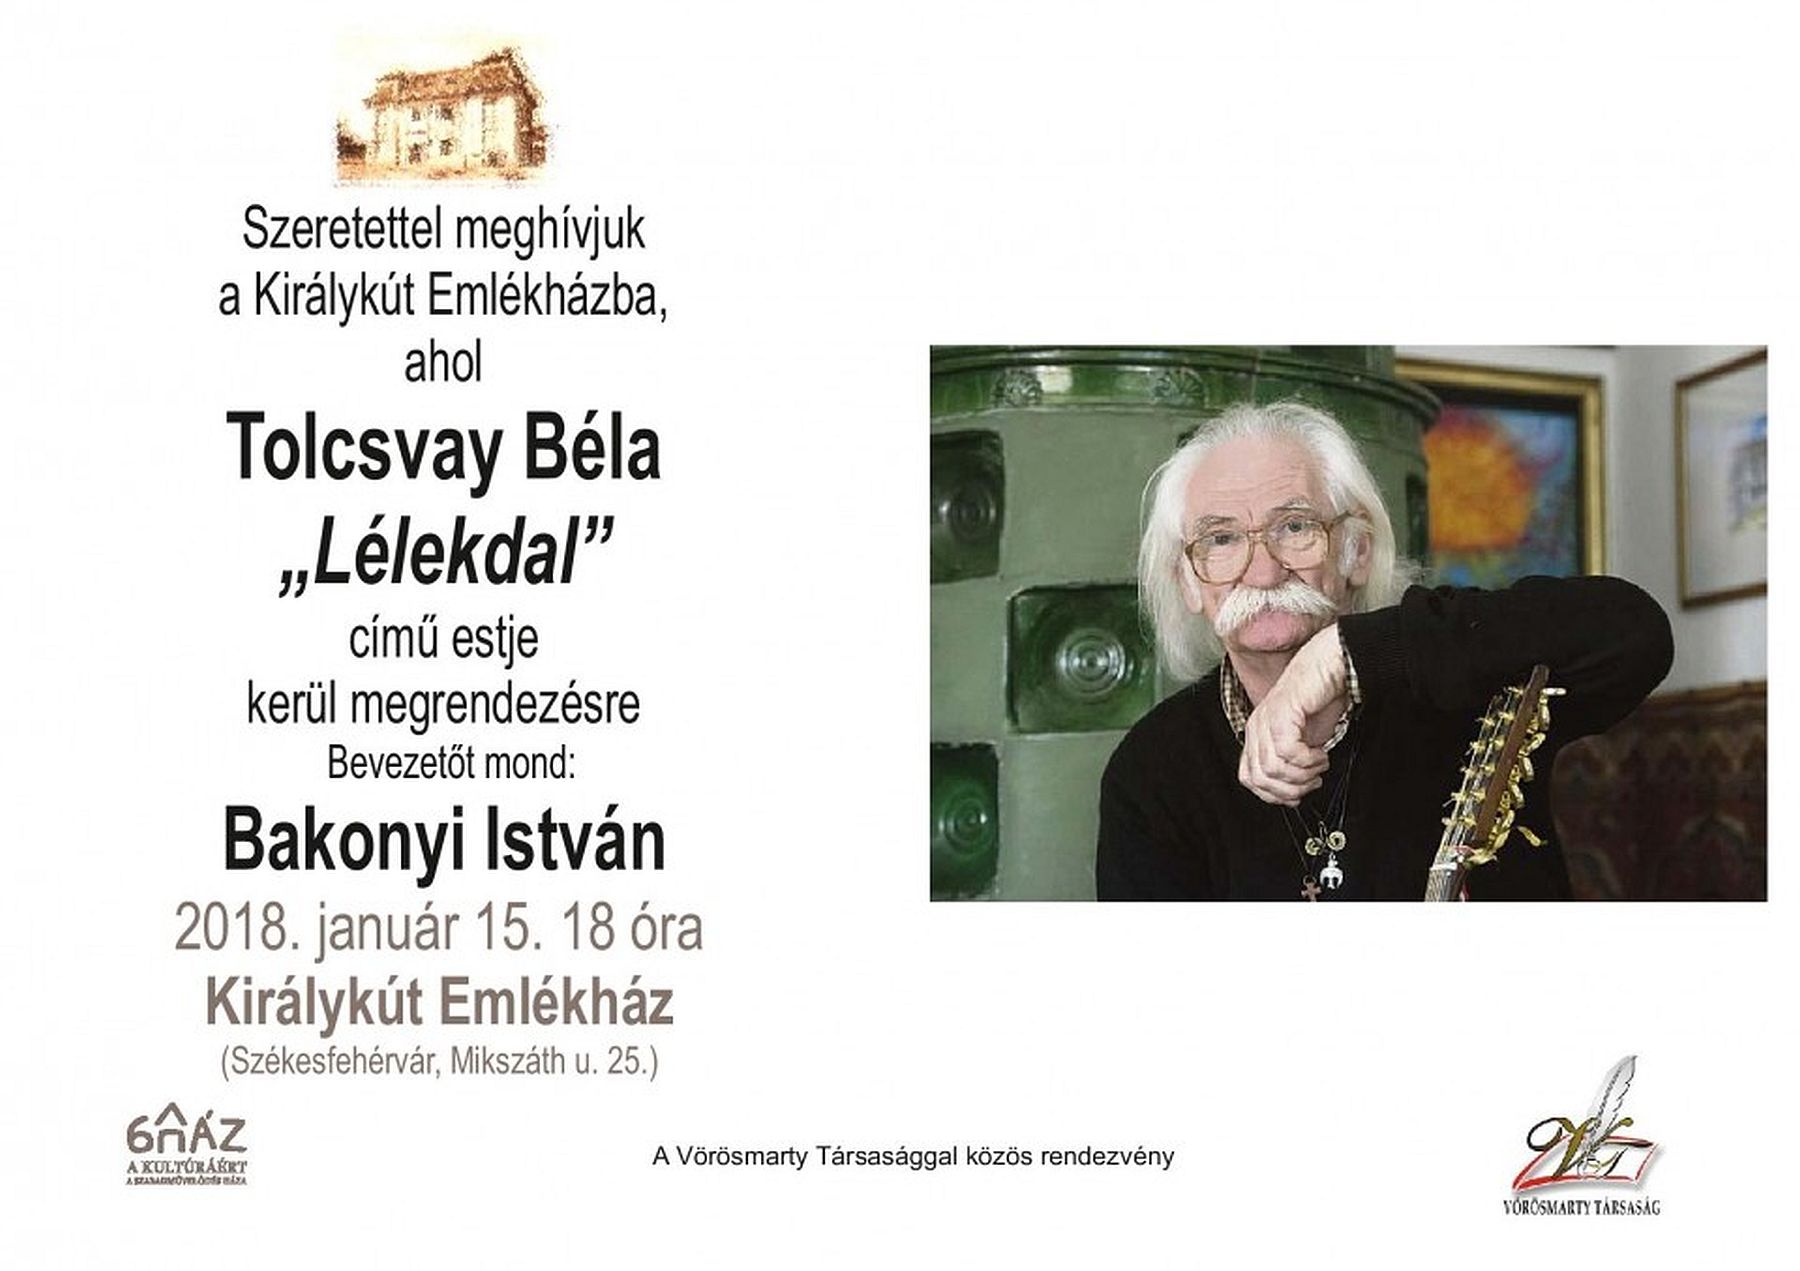 Tolcsvay Béla „Lélekdal” című estjével kezdik az évet a Királykút Emlékházban